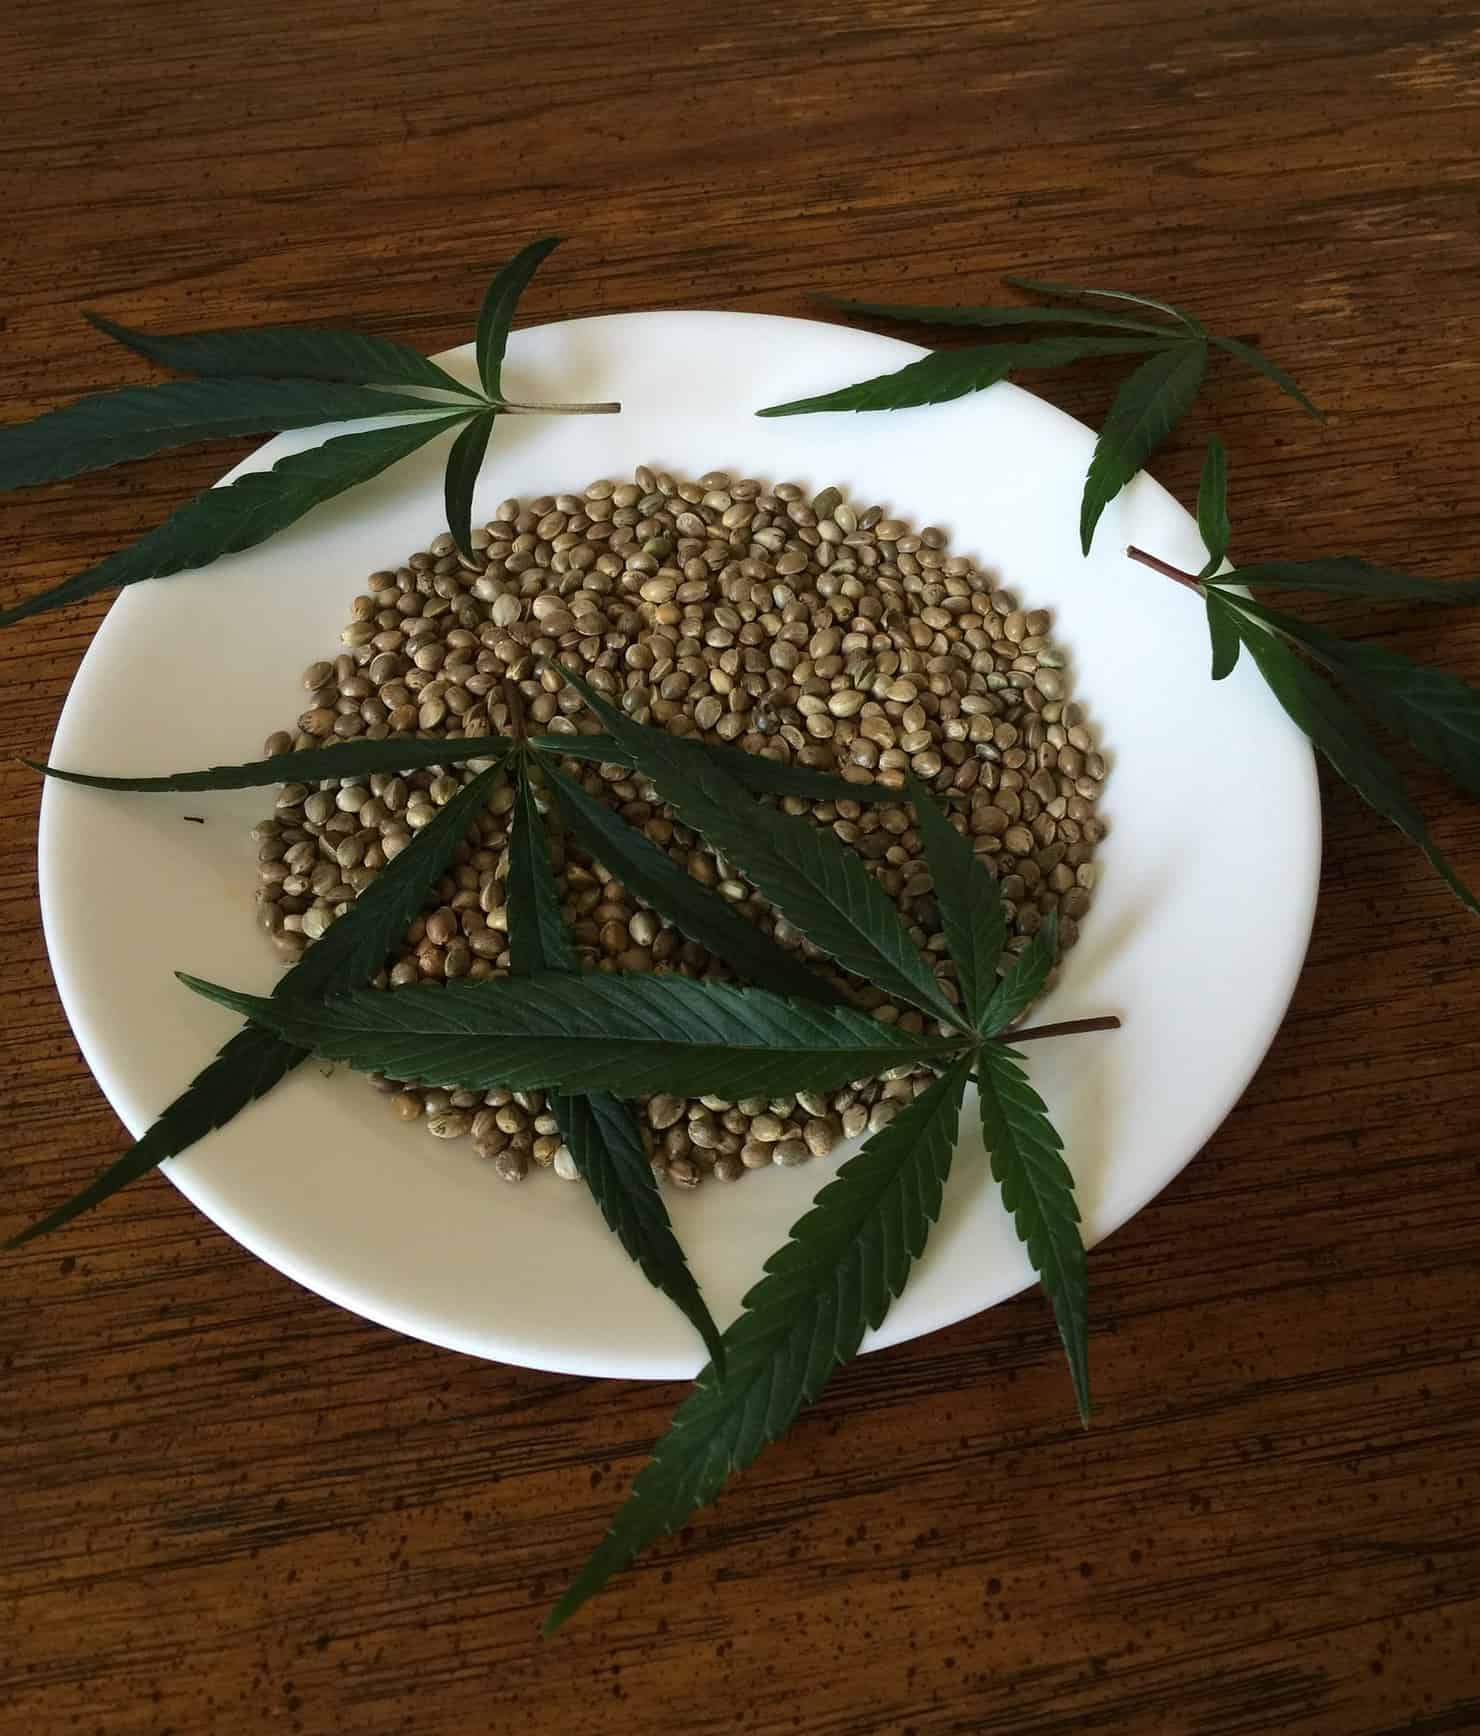 How do they feminize cannabis seeds